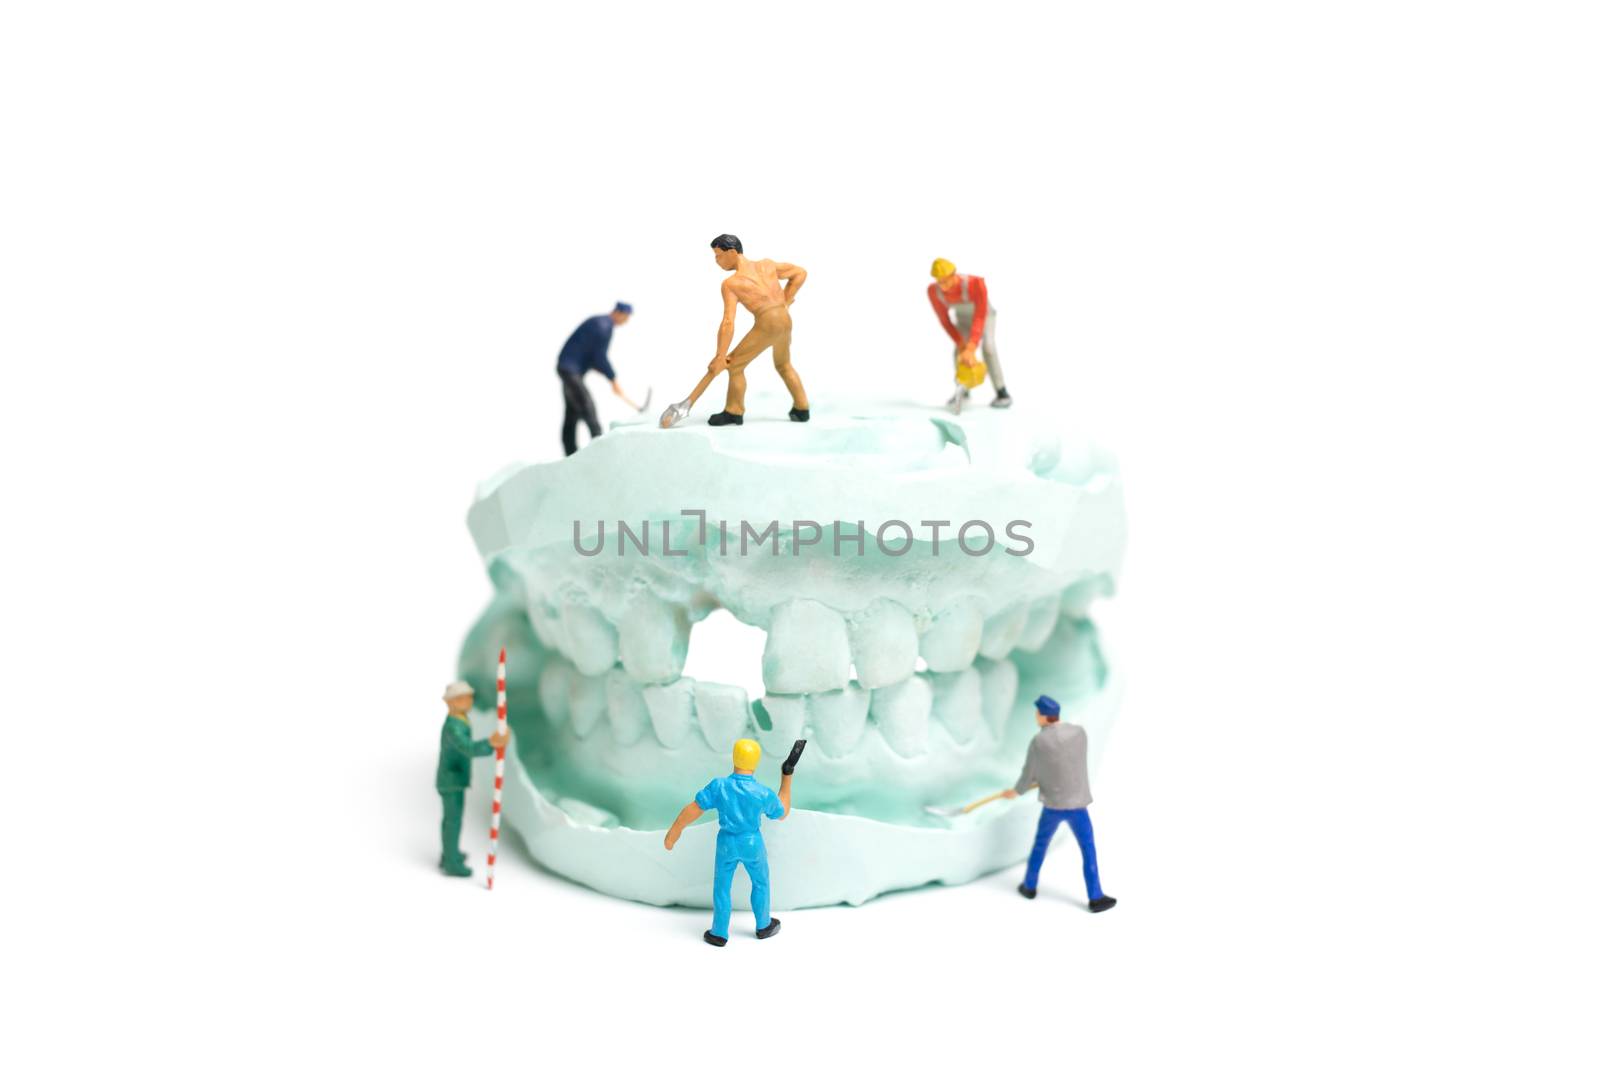 Miniature Worker team is filing fake teeth by sirichaiyaymicro